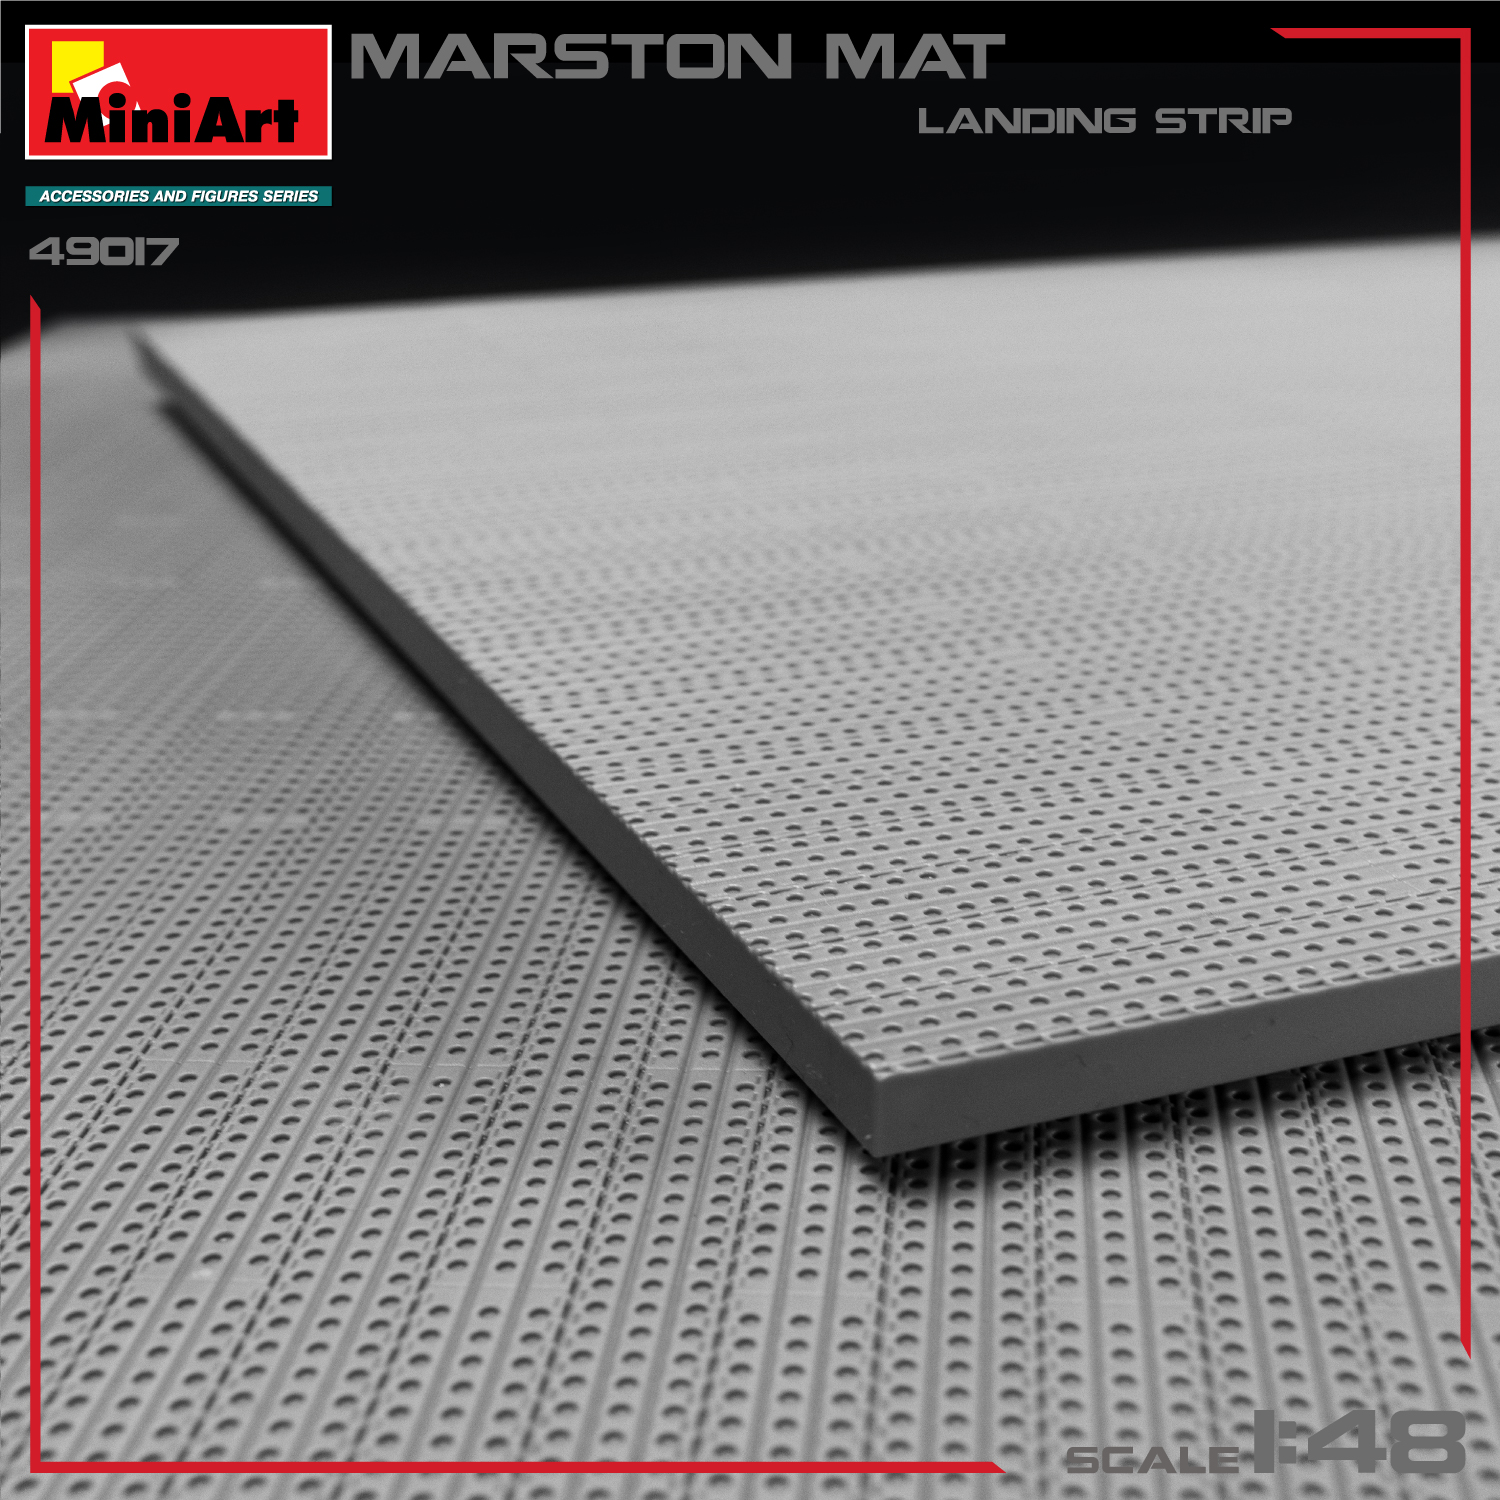 Miniart 1/48 Marston Mat Landing Strip # 49017